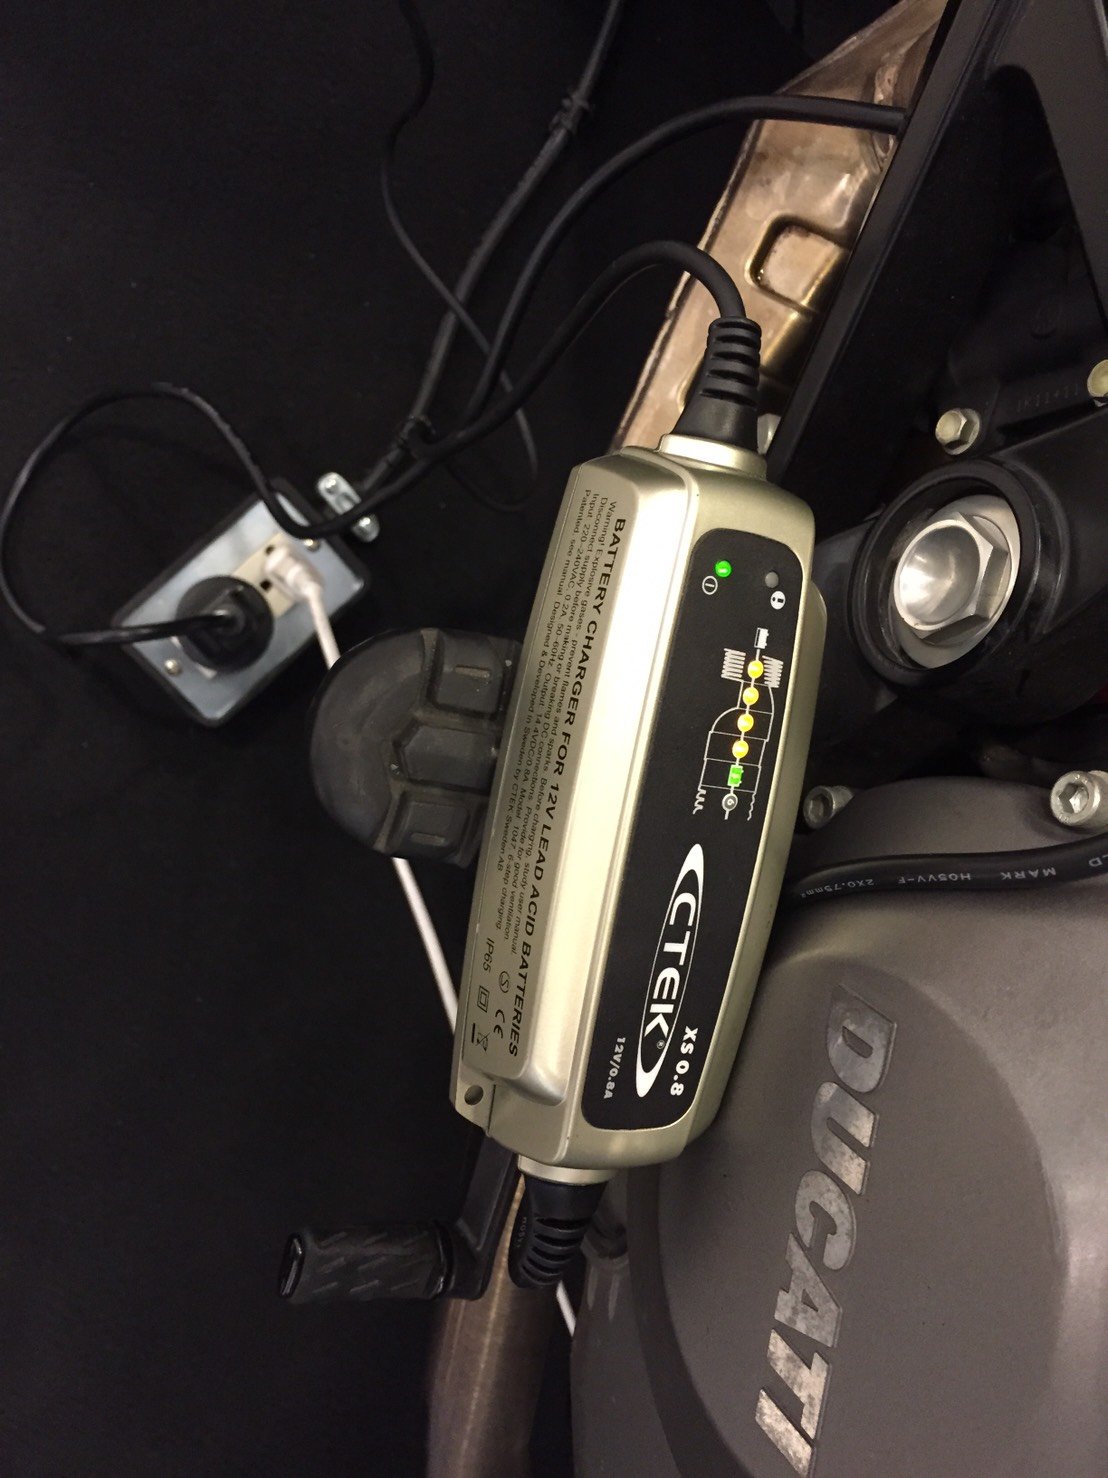 Adaptor for Ducati - aprtech